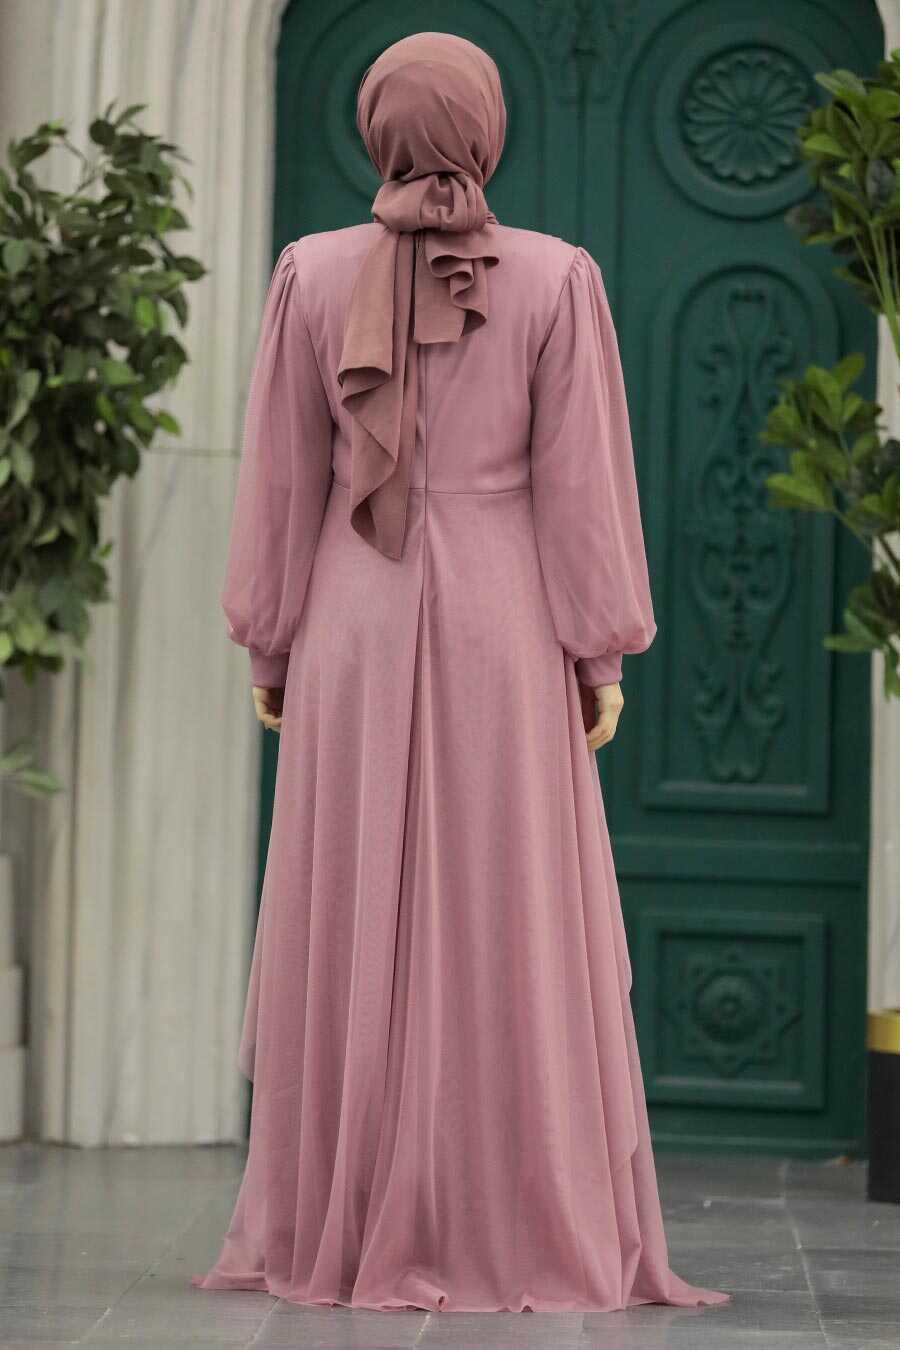 Neva Style - Stylish Dusty Rose Islamic Clothing Evening Dress 22123GK